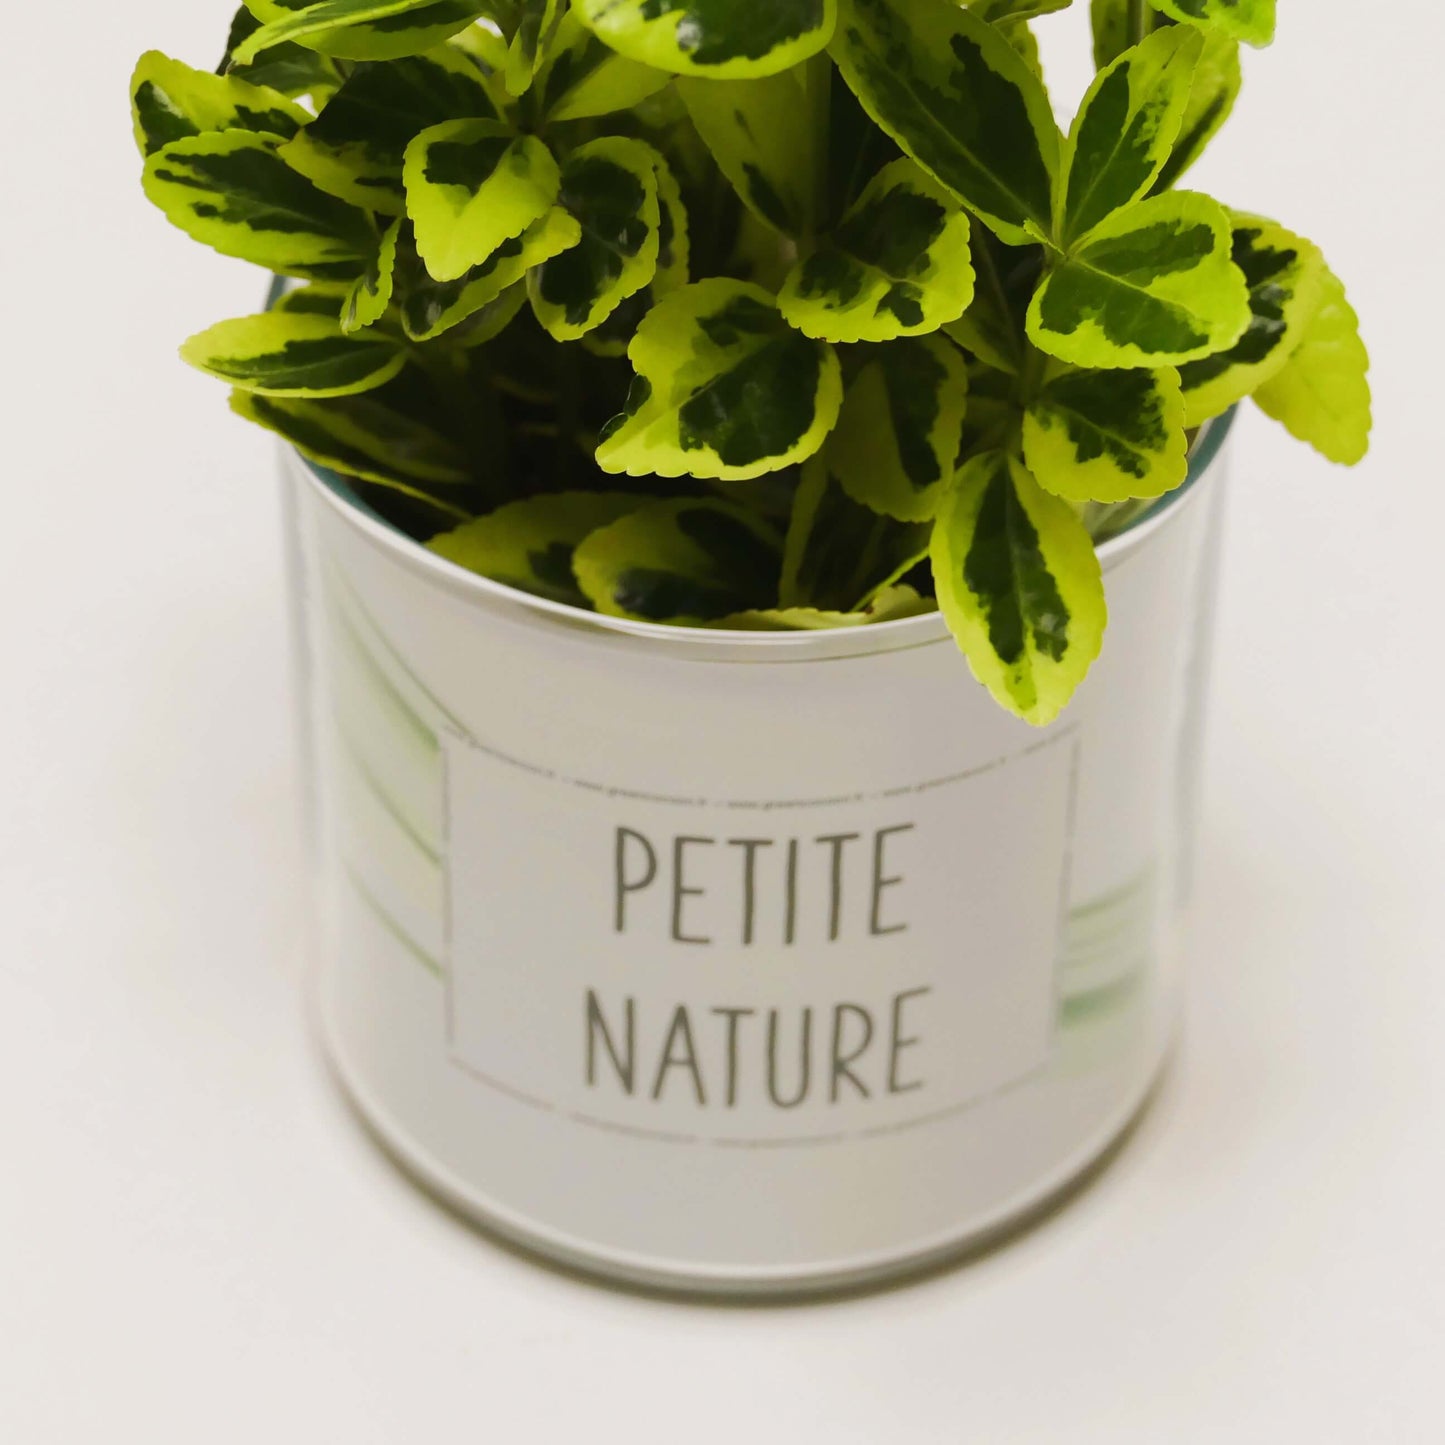 Pot Petite nature et sa plante